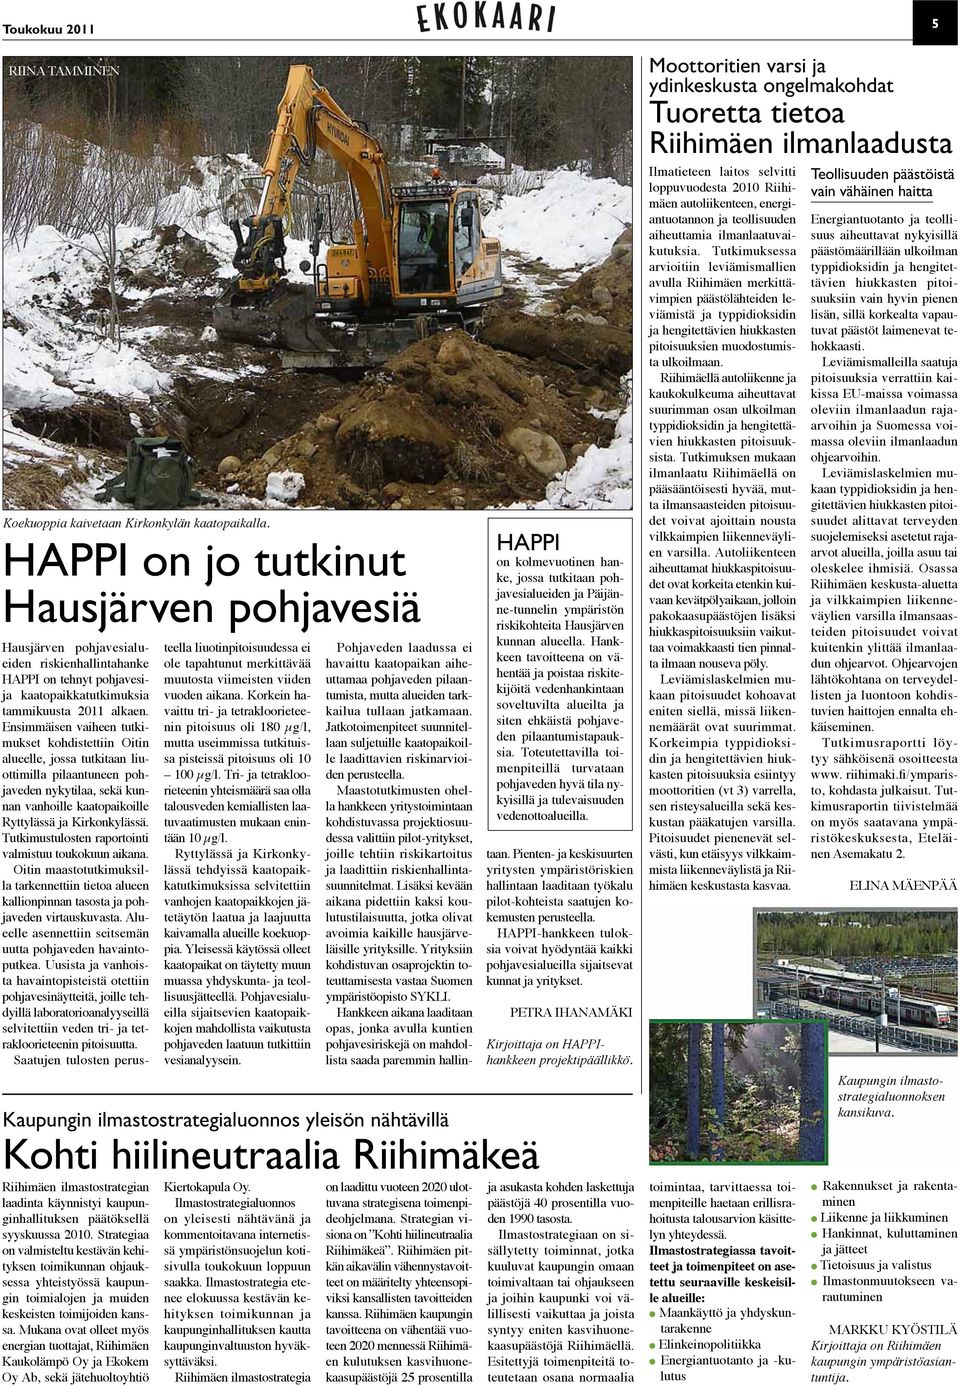 Ensimmäisen vaiheen tutkimukset kohdistettiin Oitin alueelle, jossa tutkitaan liuottimilla pilaantuneen pohjaveden nykytilaa, sekä kunnan vanhoille kaatopaikoille Ryttylässä ja Kirkonkylässä.